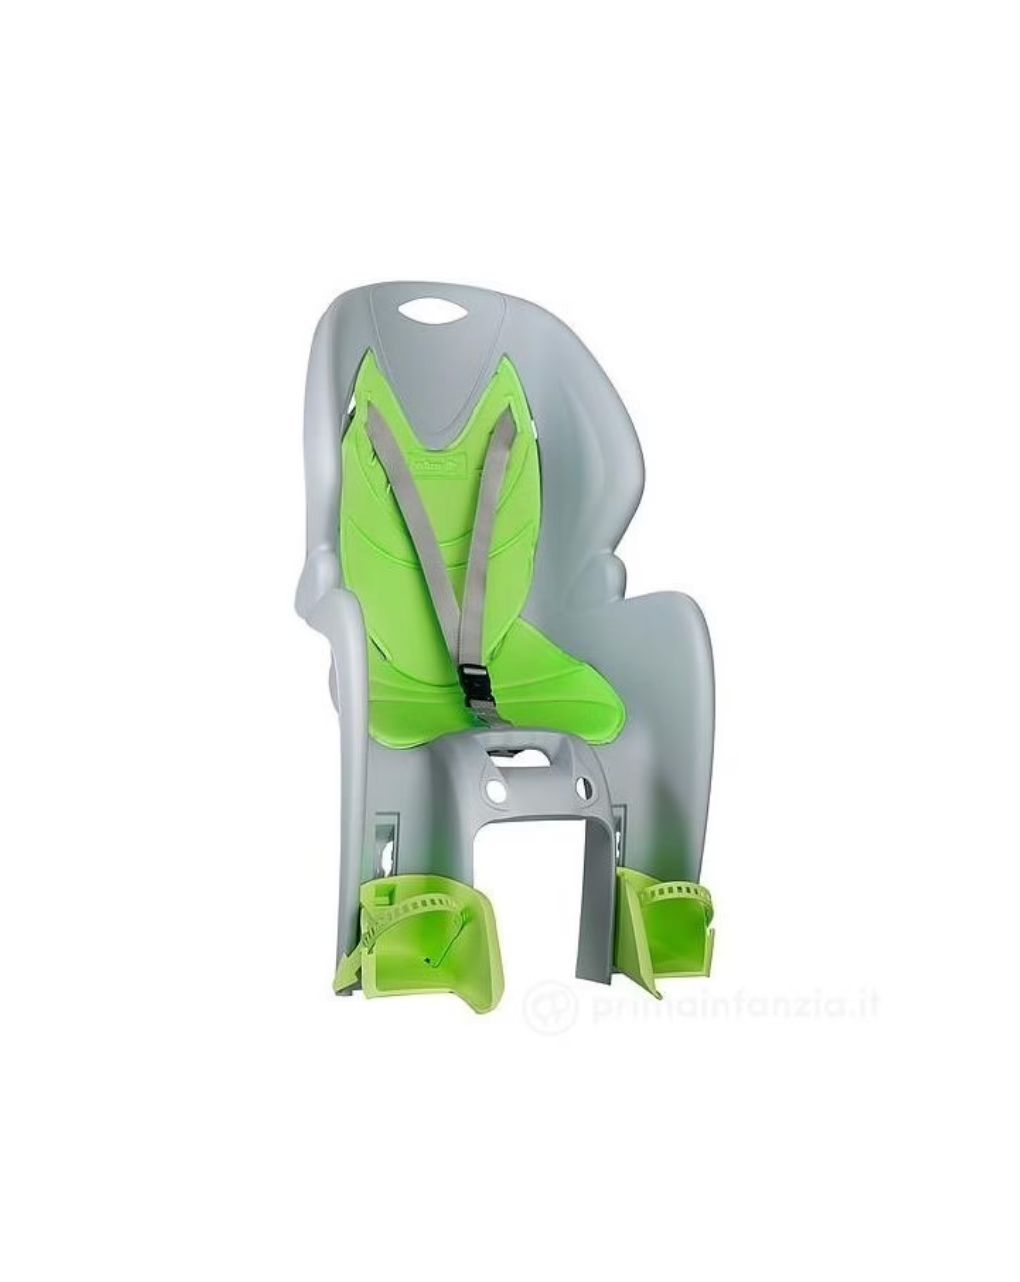 Nfun simpatico παιδικό κάθισμα ποδηλάτου πράσινο